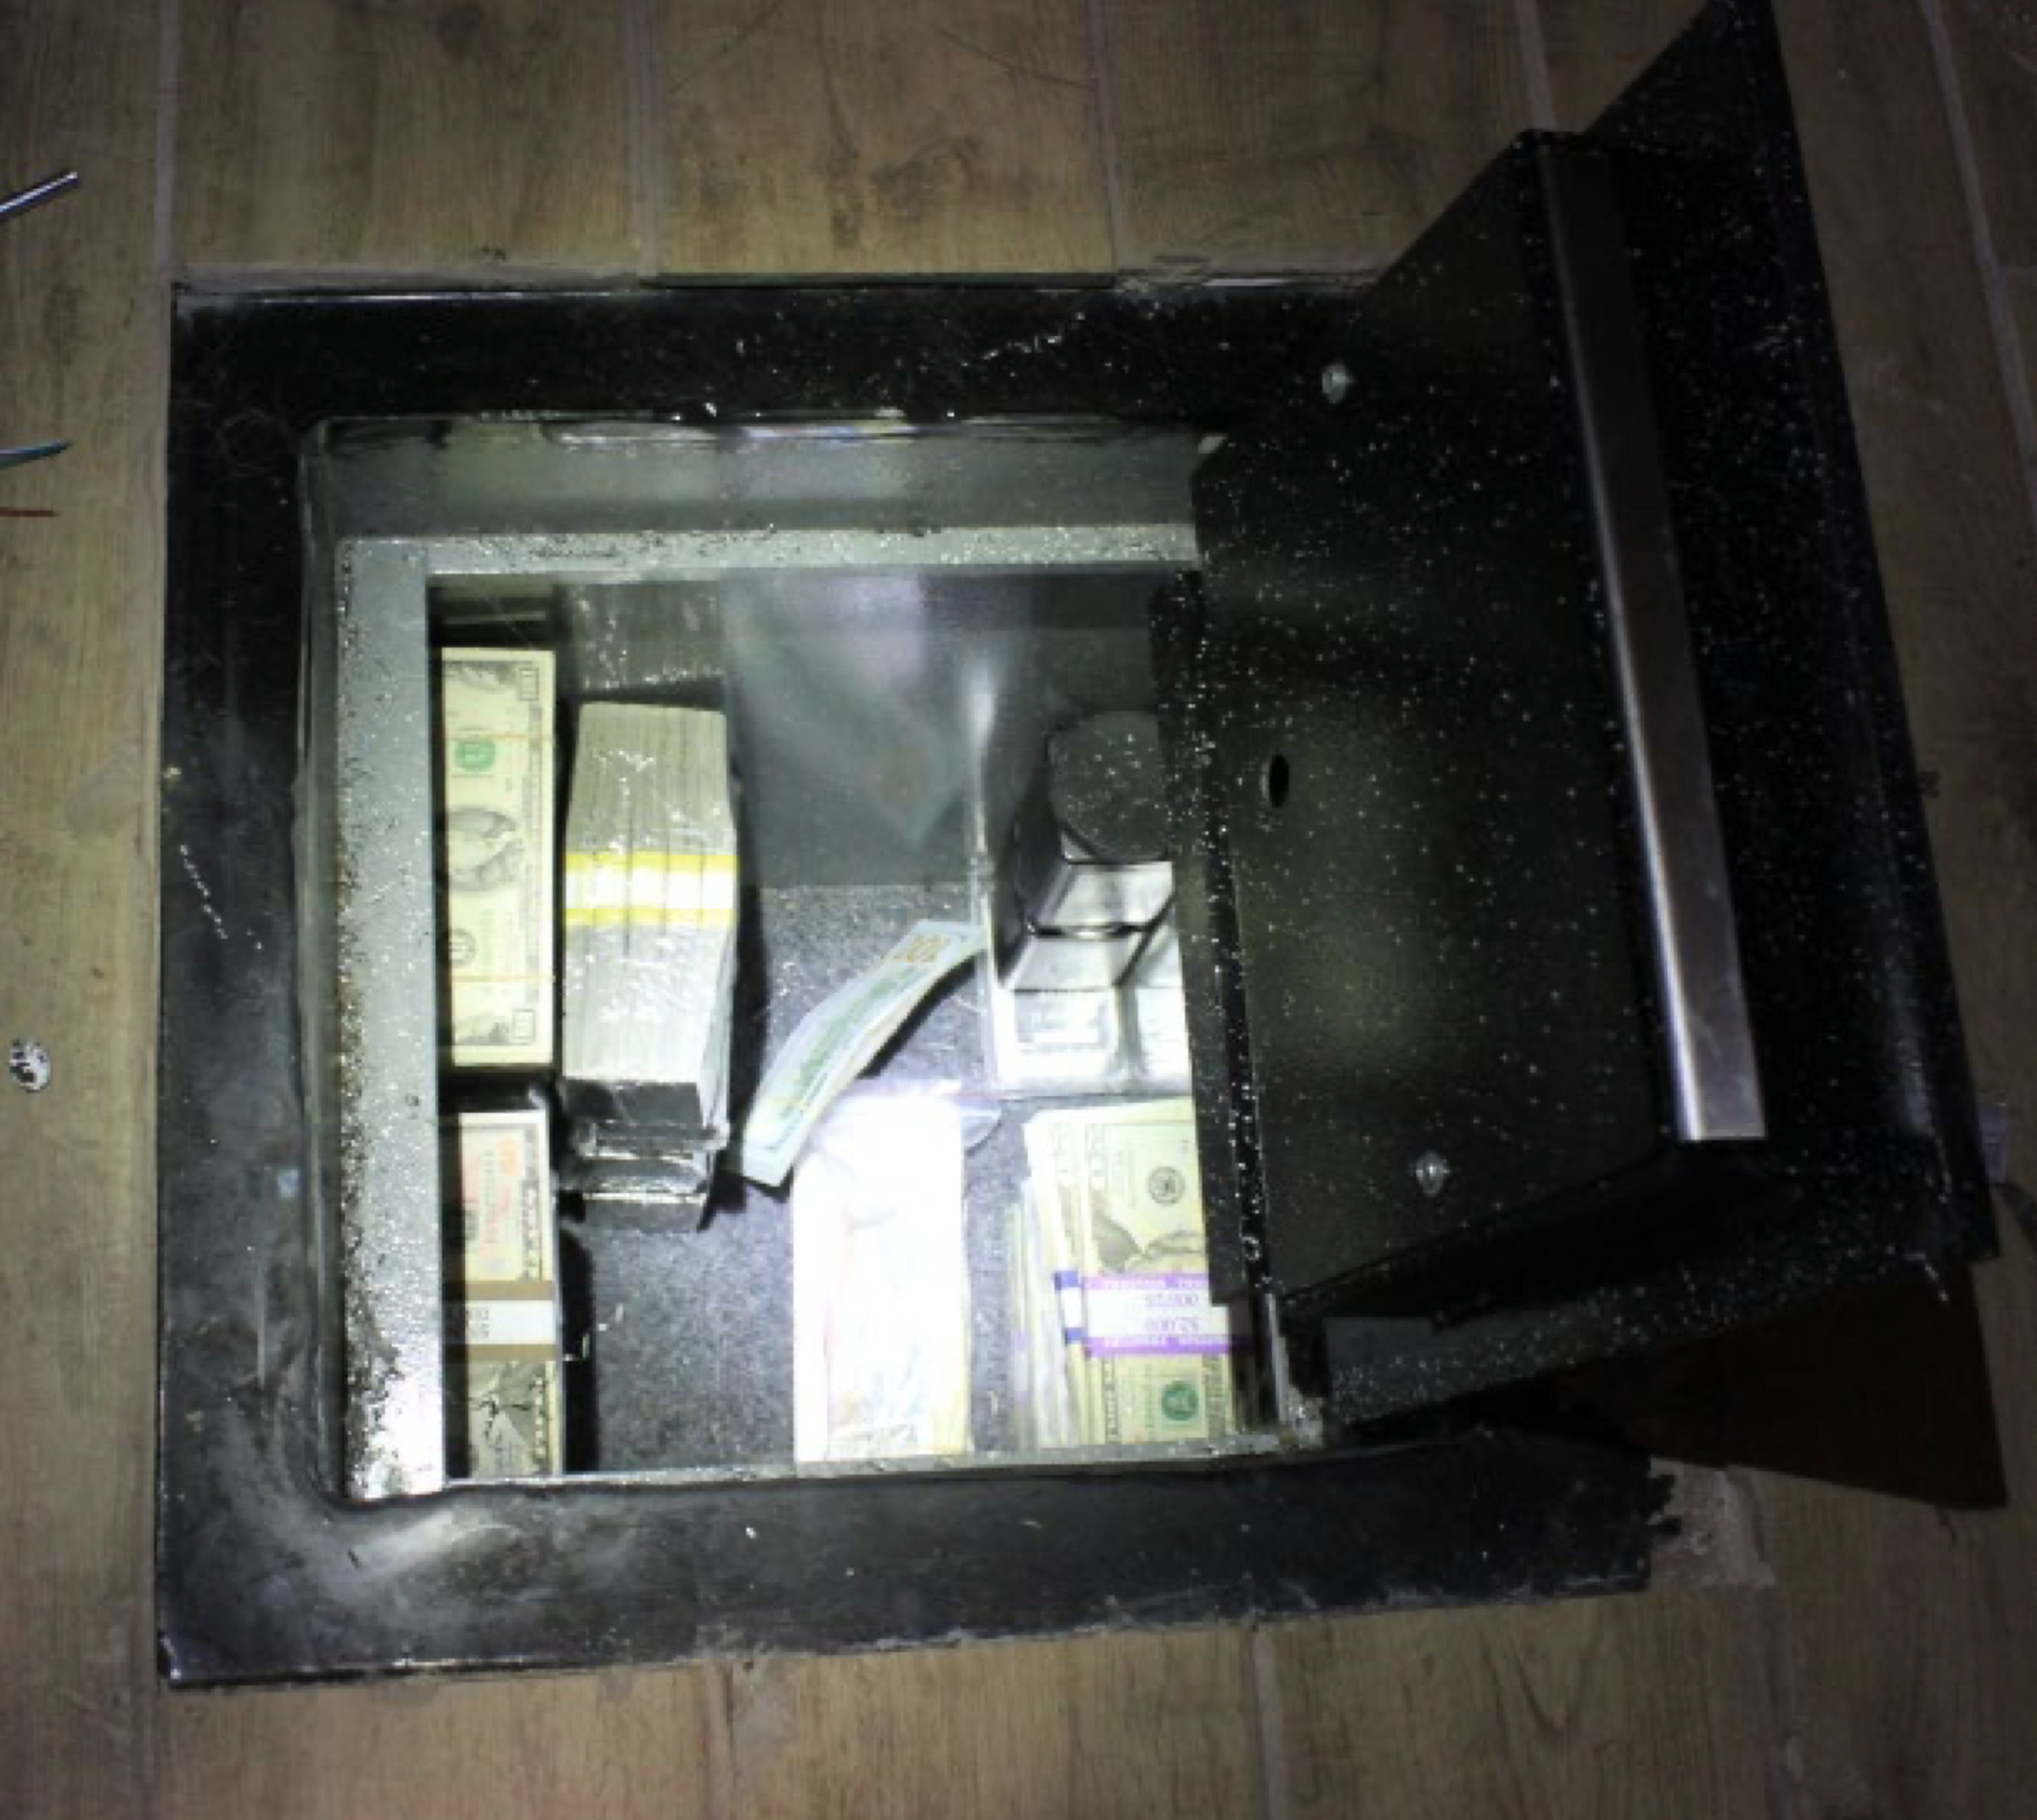 Bild eines in einen Holzboden eingebetteten Safes, der Bargeld und zwei Metallgegenstände enthält.